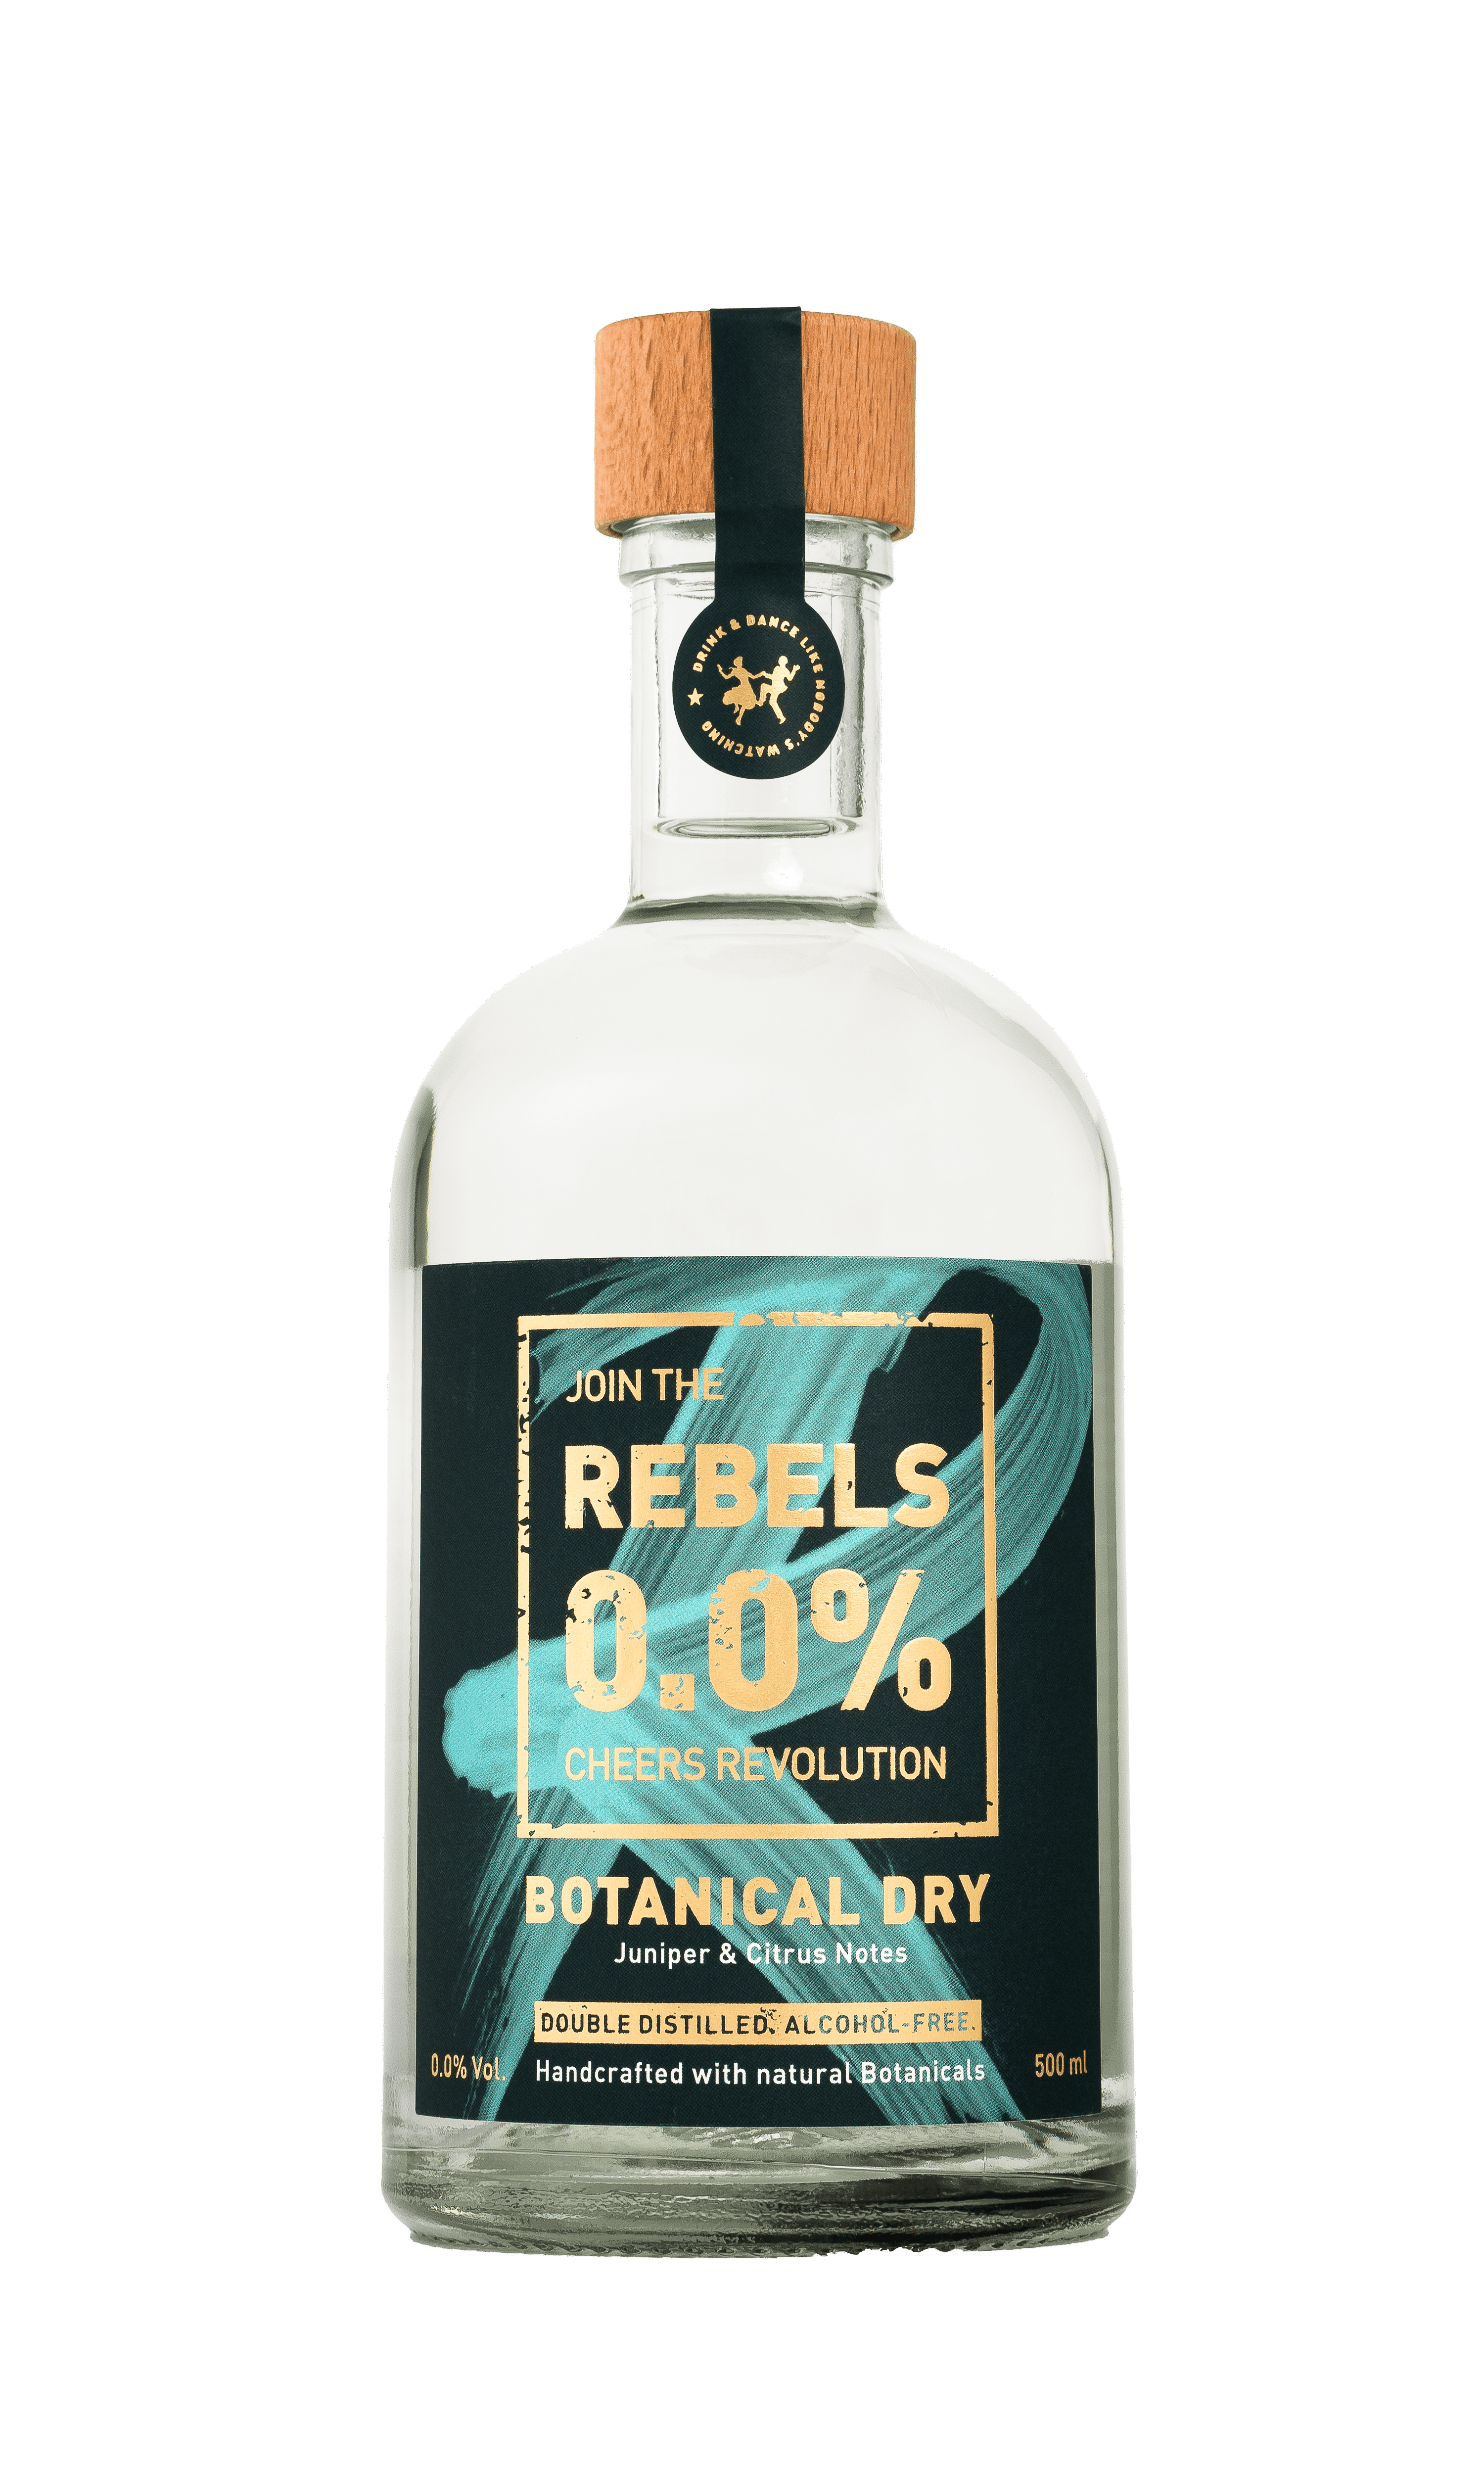 Een doorzichtige fles met heldere vloeistof en een etiket dat 'REBELS 0.0% Botanical Dry' vermeldt, verzegeld met een houten dop en zwart label.